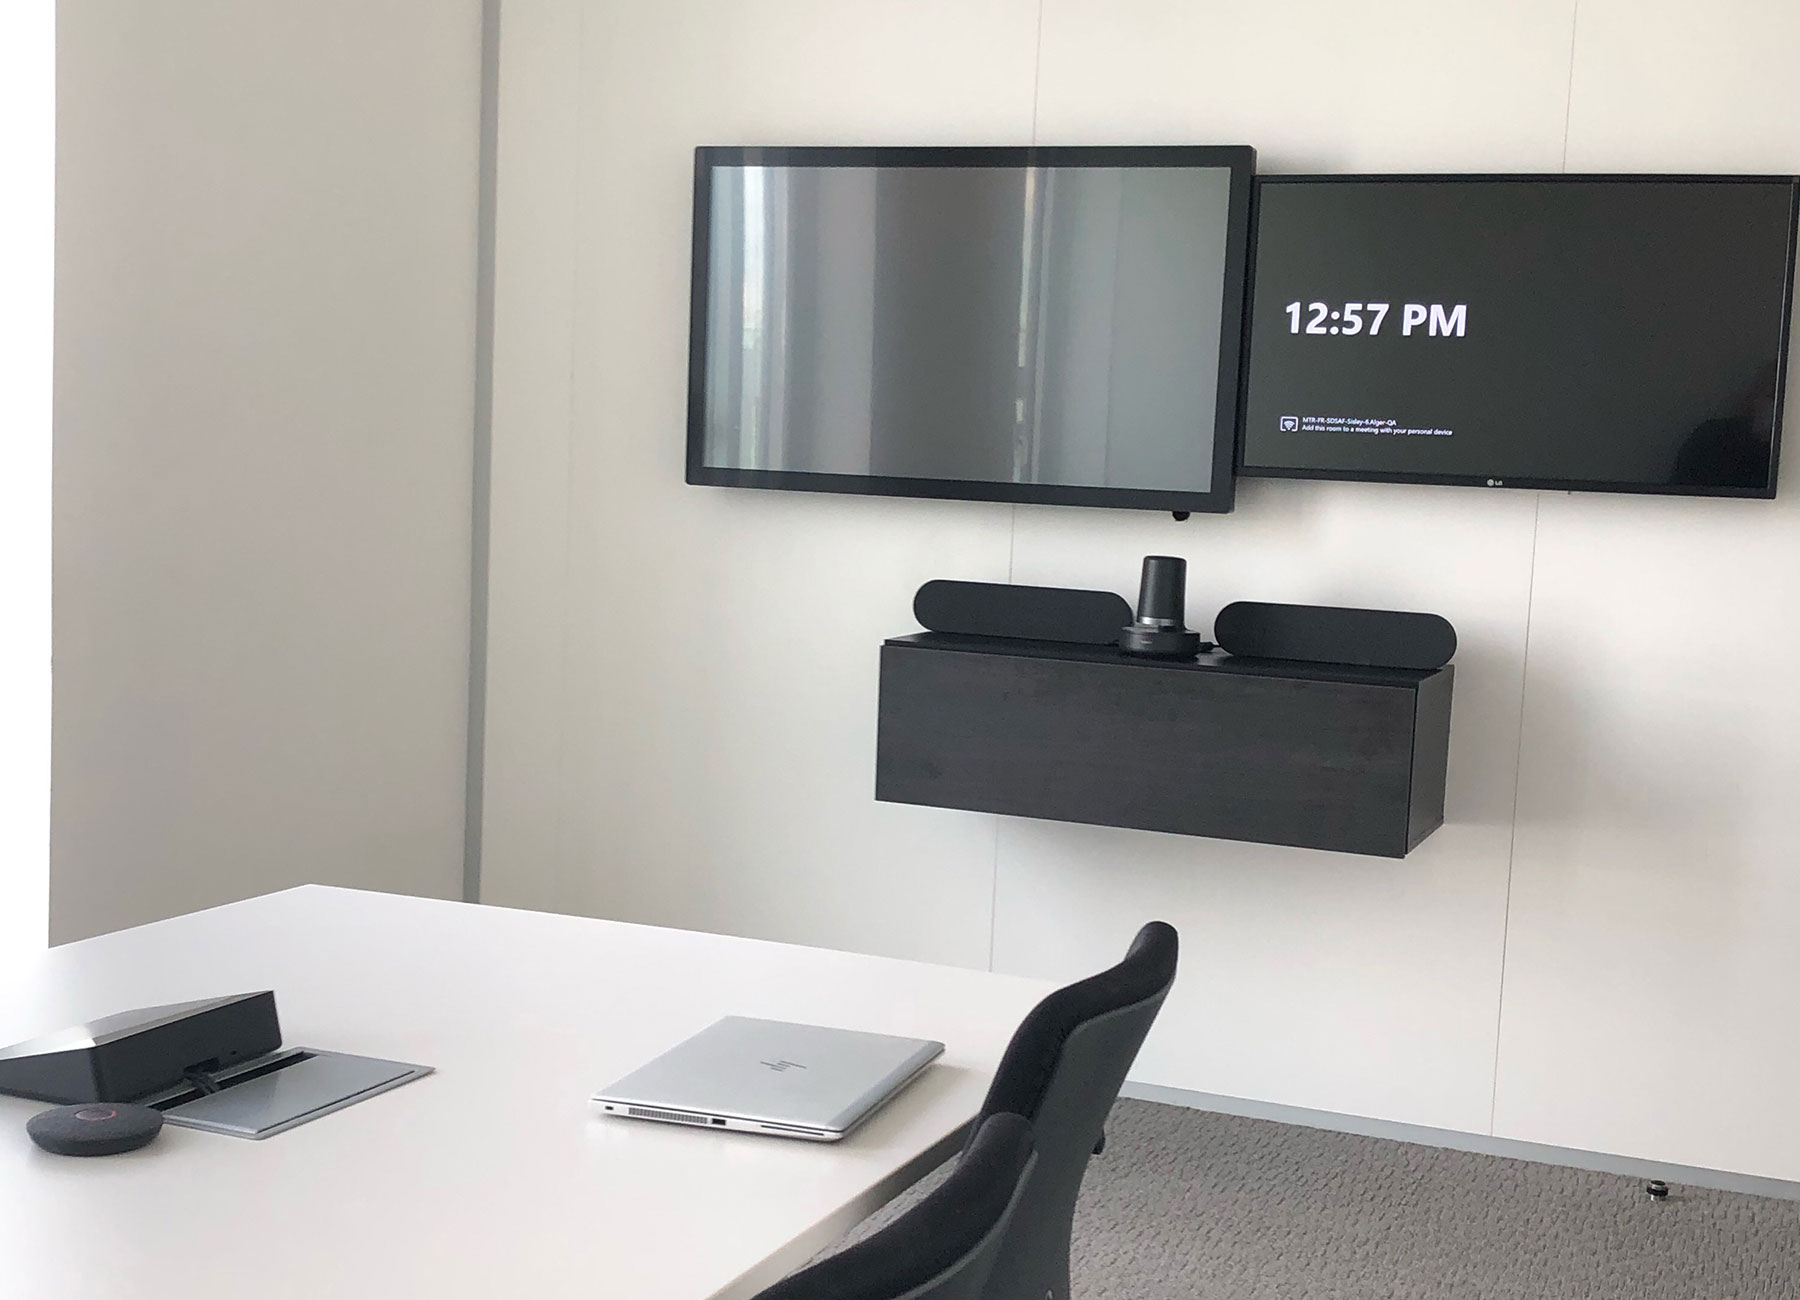 Configurazione per videoconferenze con due monitor